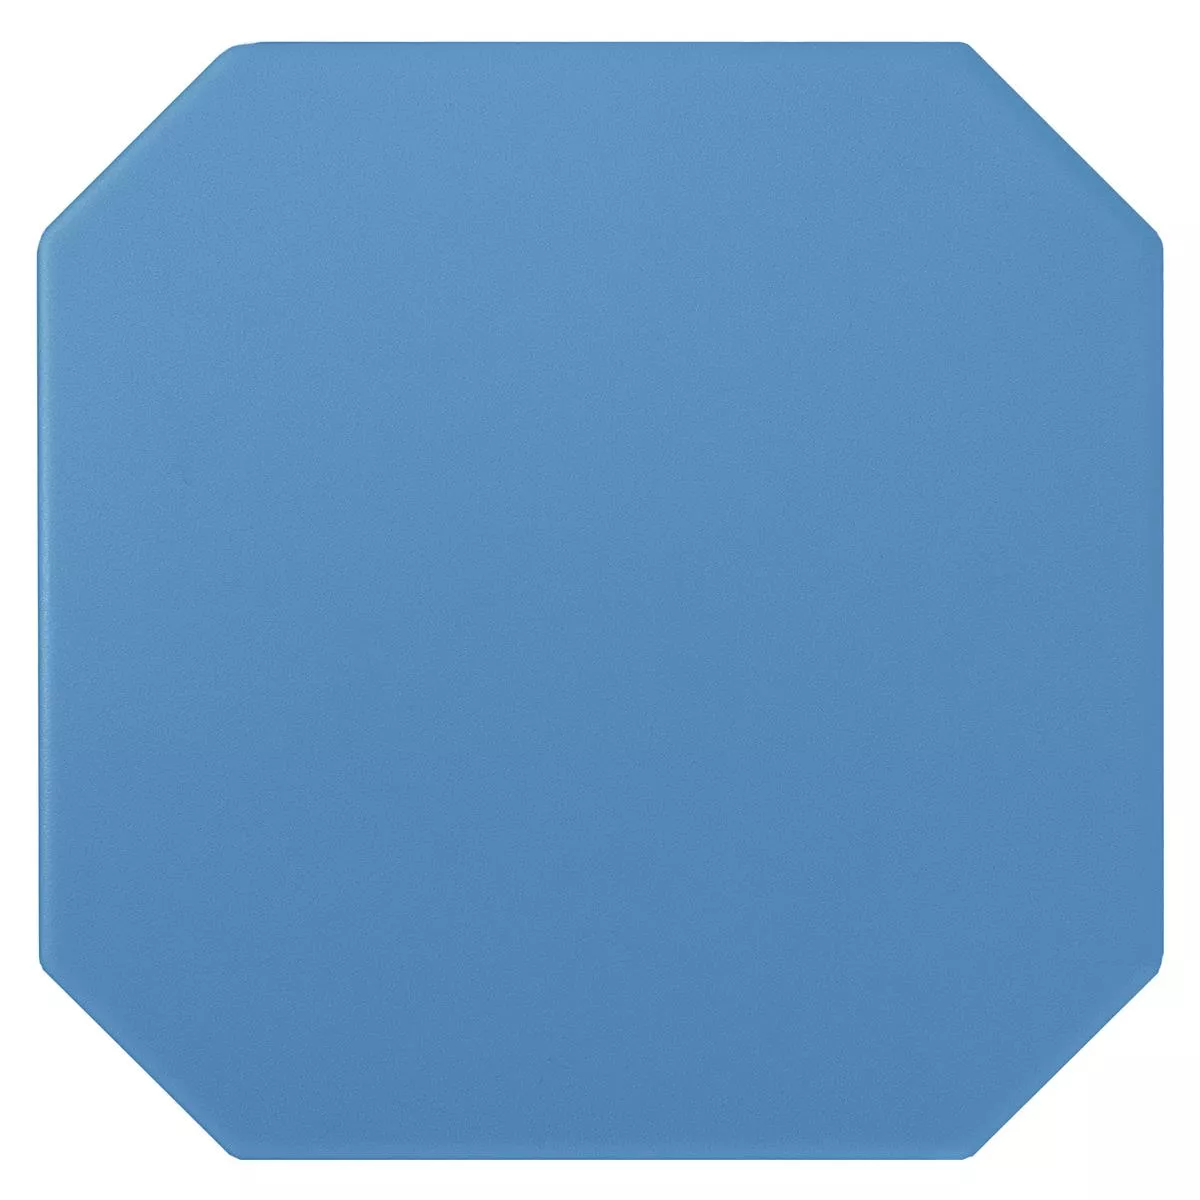 Sample Porcelain Stoneware Tiles Genexia Uni Blue Octagon 20x20cm